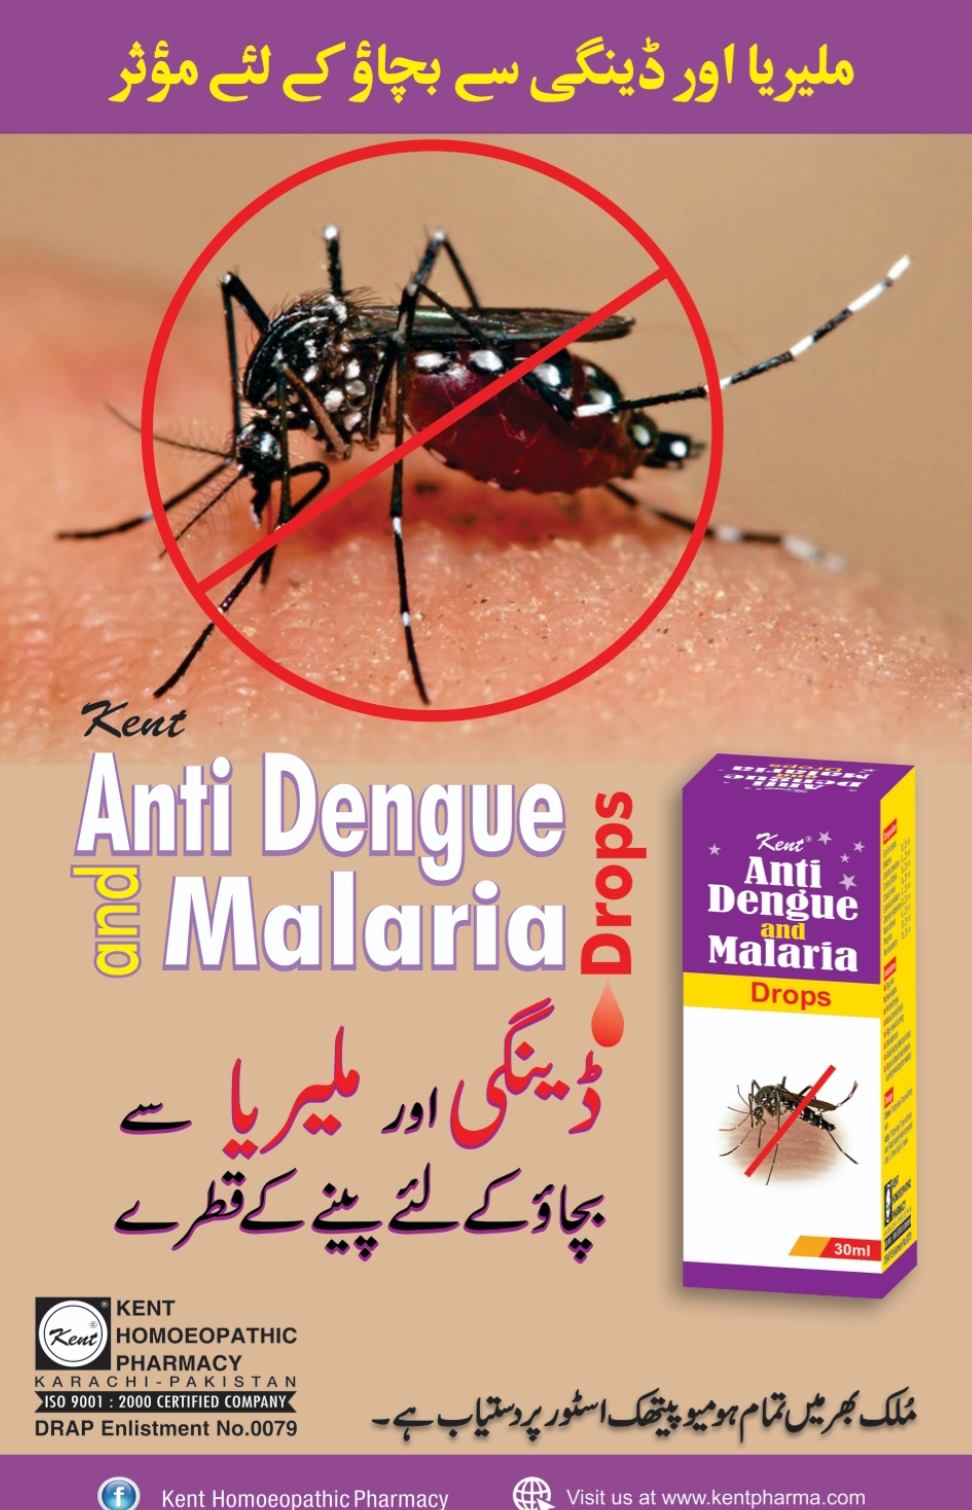 KENT ANTI DENGUE AND MALARIA DROPS (MALIDENG)